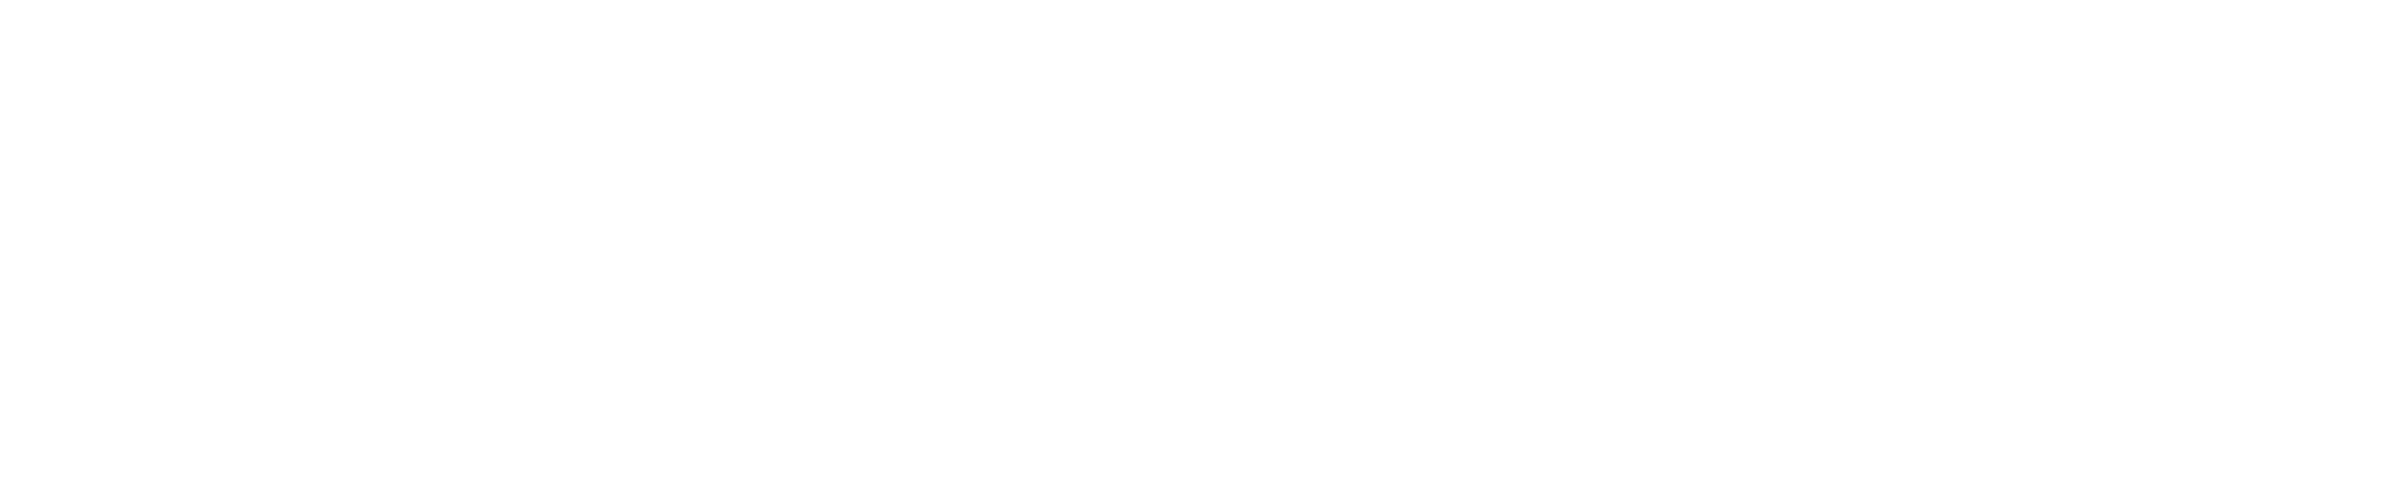 高崎市のガールズバー「GUEST」のロゴ